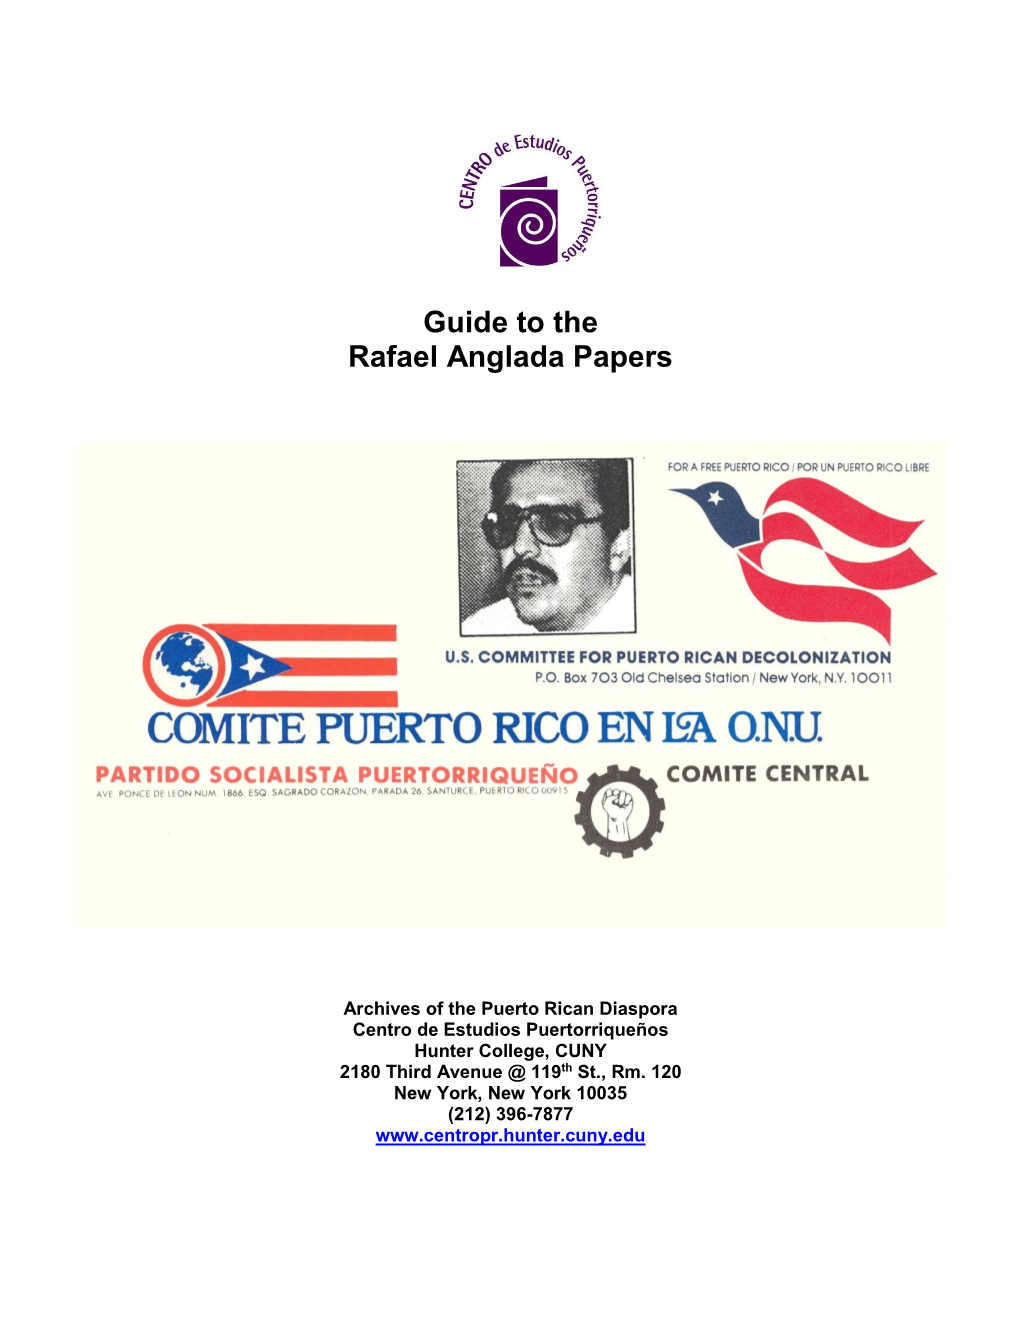 Rafael Anglada Papers